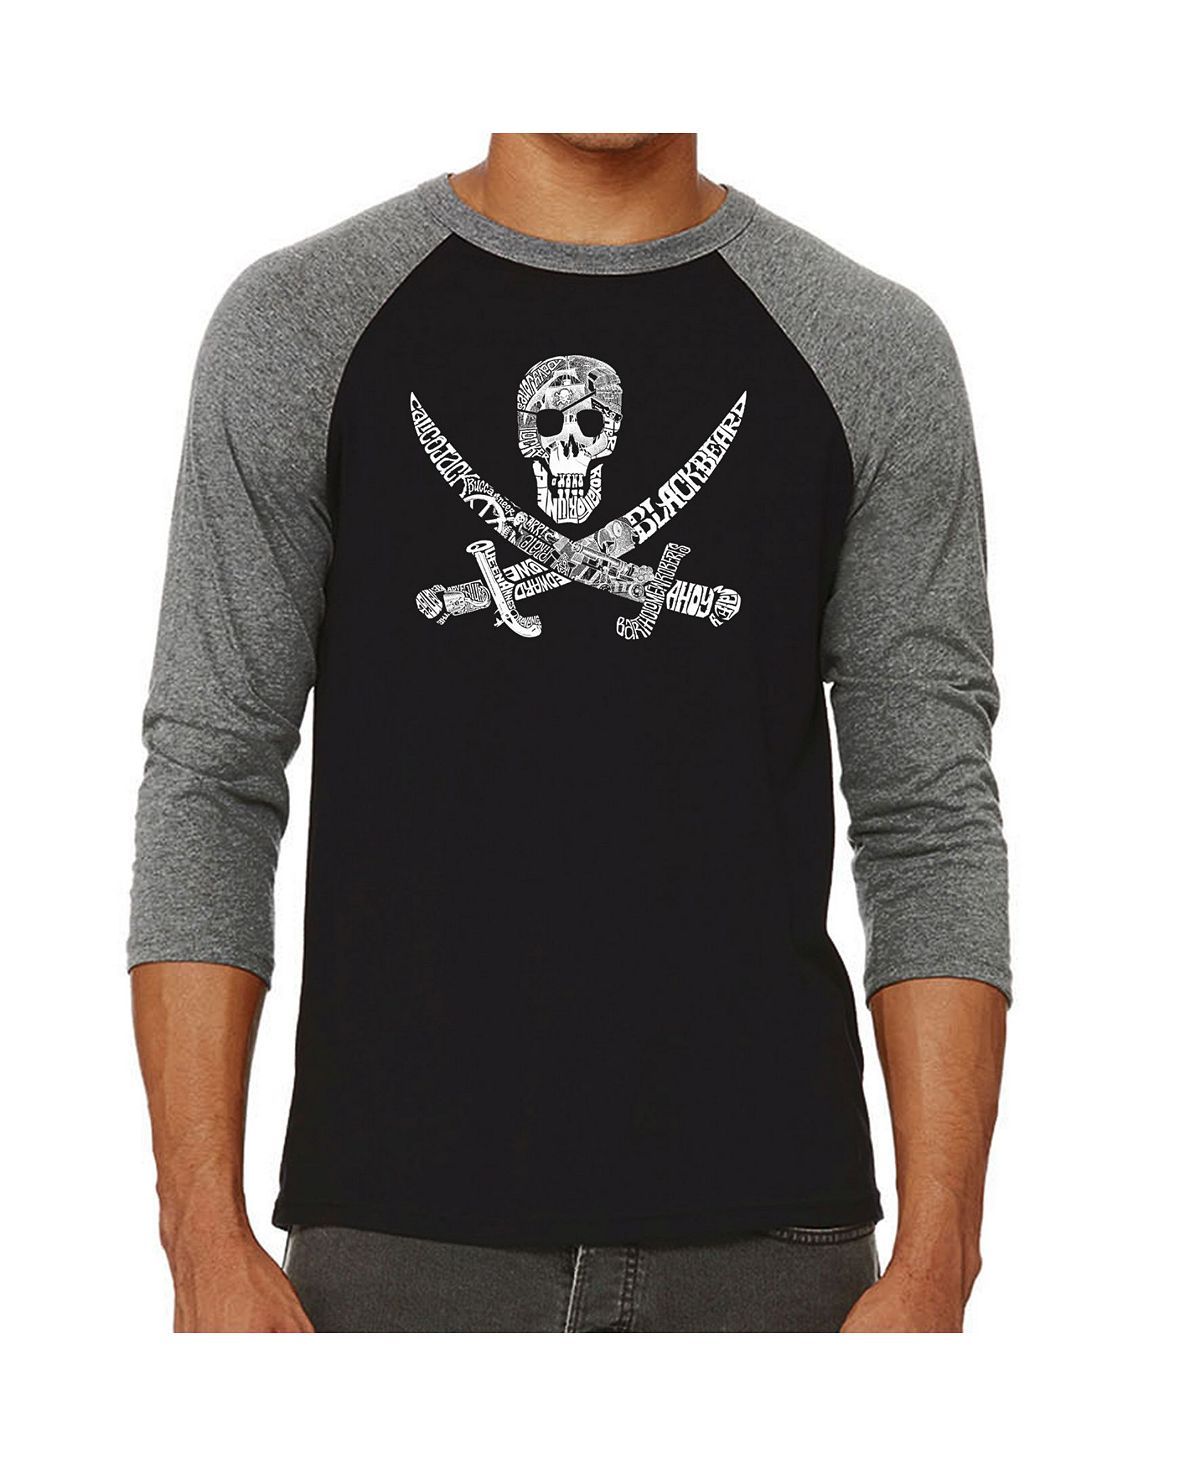 Мужская футболка с принтом пиратский череп и регланом word art LA Pop Art, серый мужская футболка с принтом пиратский череп и регланом word art la pop art черный